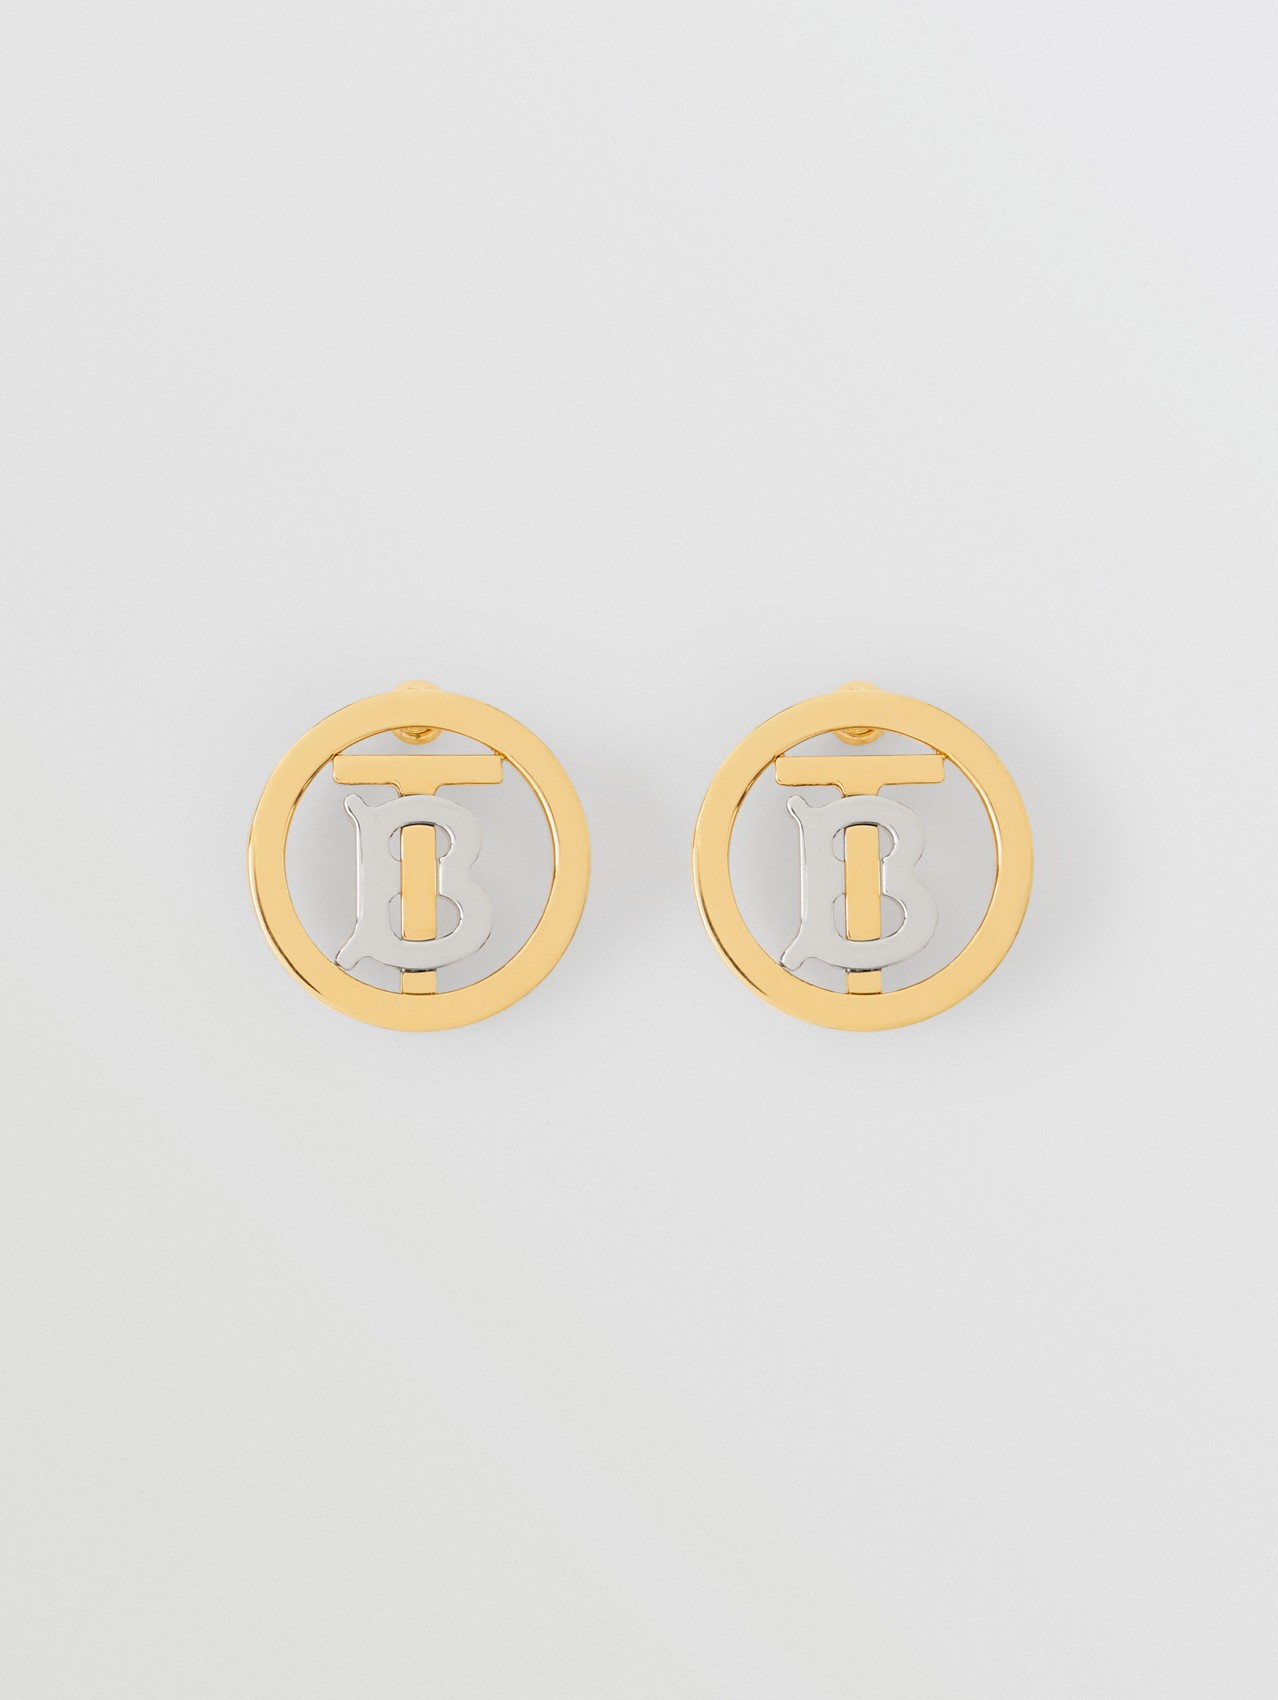 Vergoldete und Palladium-beschichtete Ohrringe mit Monogrammmotiv (Helles Goldfarben)